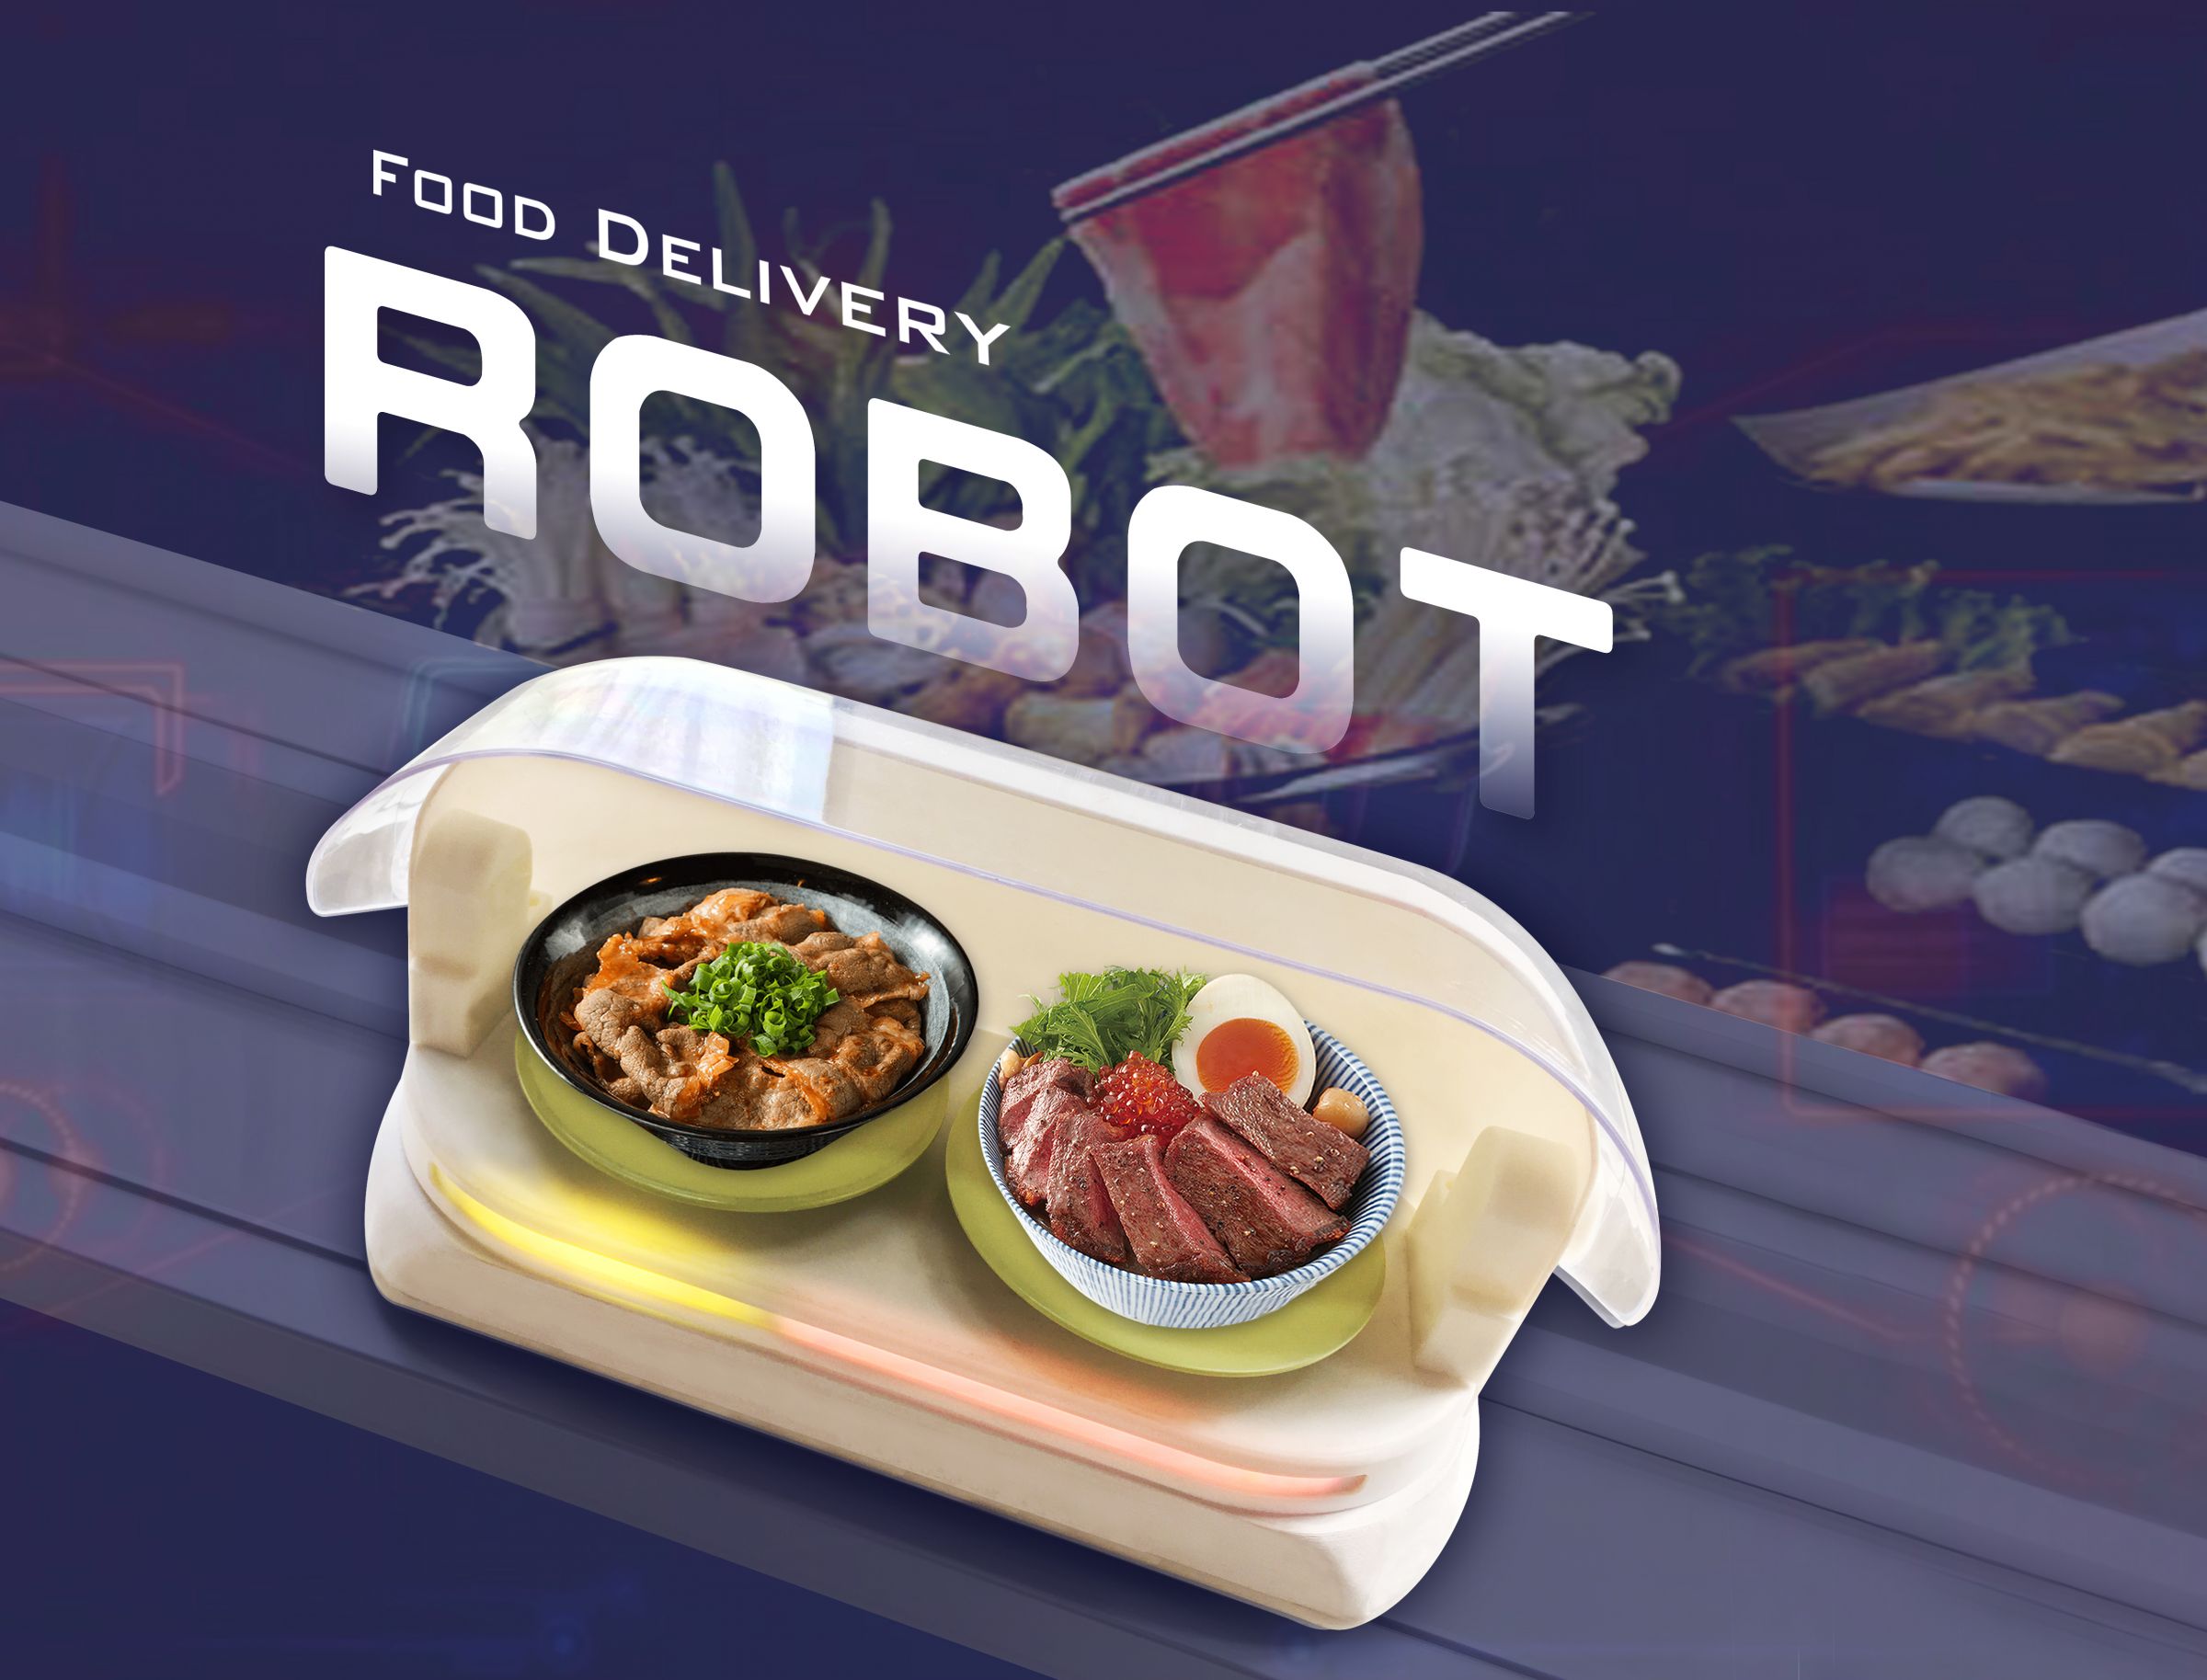 ρομπότ παράδοσης τροφίμων